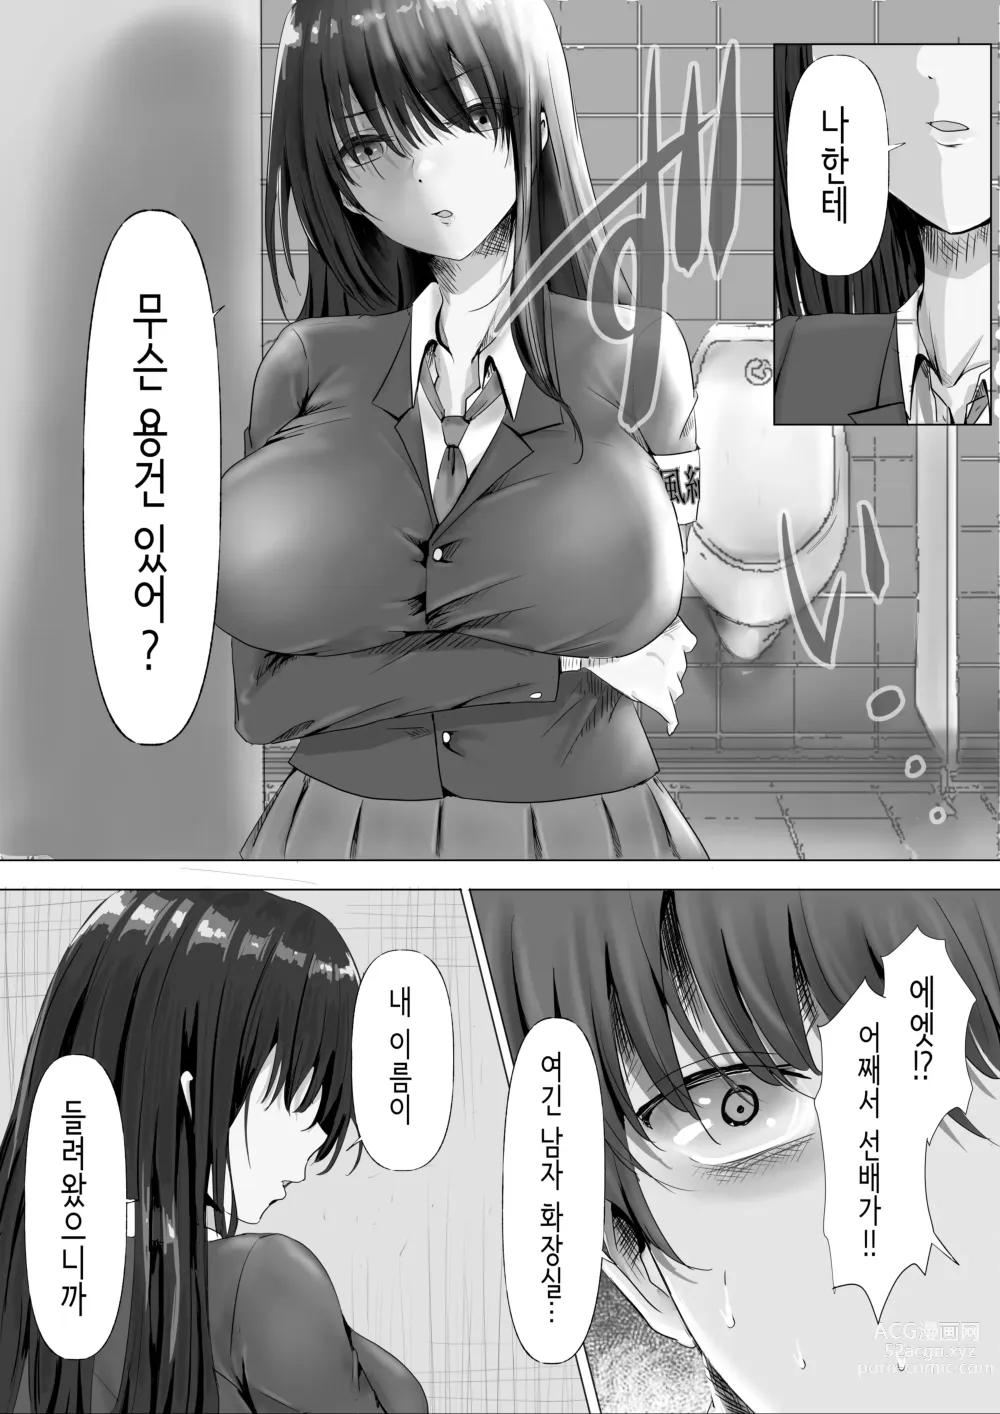 Page 9 of doujinshi 과묵하고 긴 흑발의 거유 풍기위원장을 미친듯이 따먹고 싶다